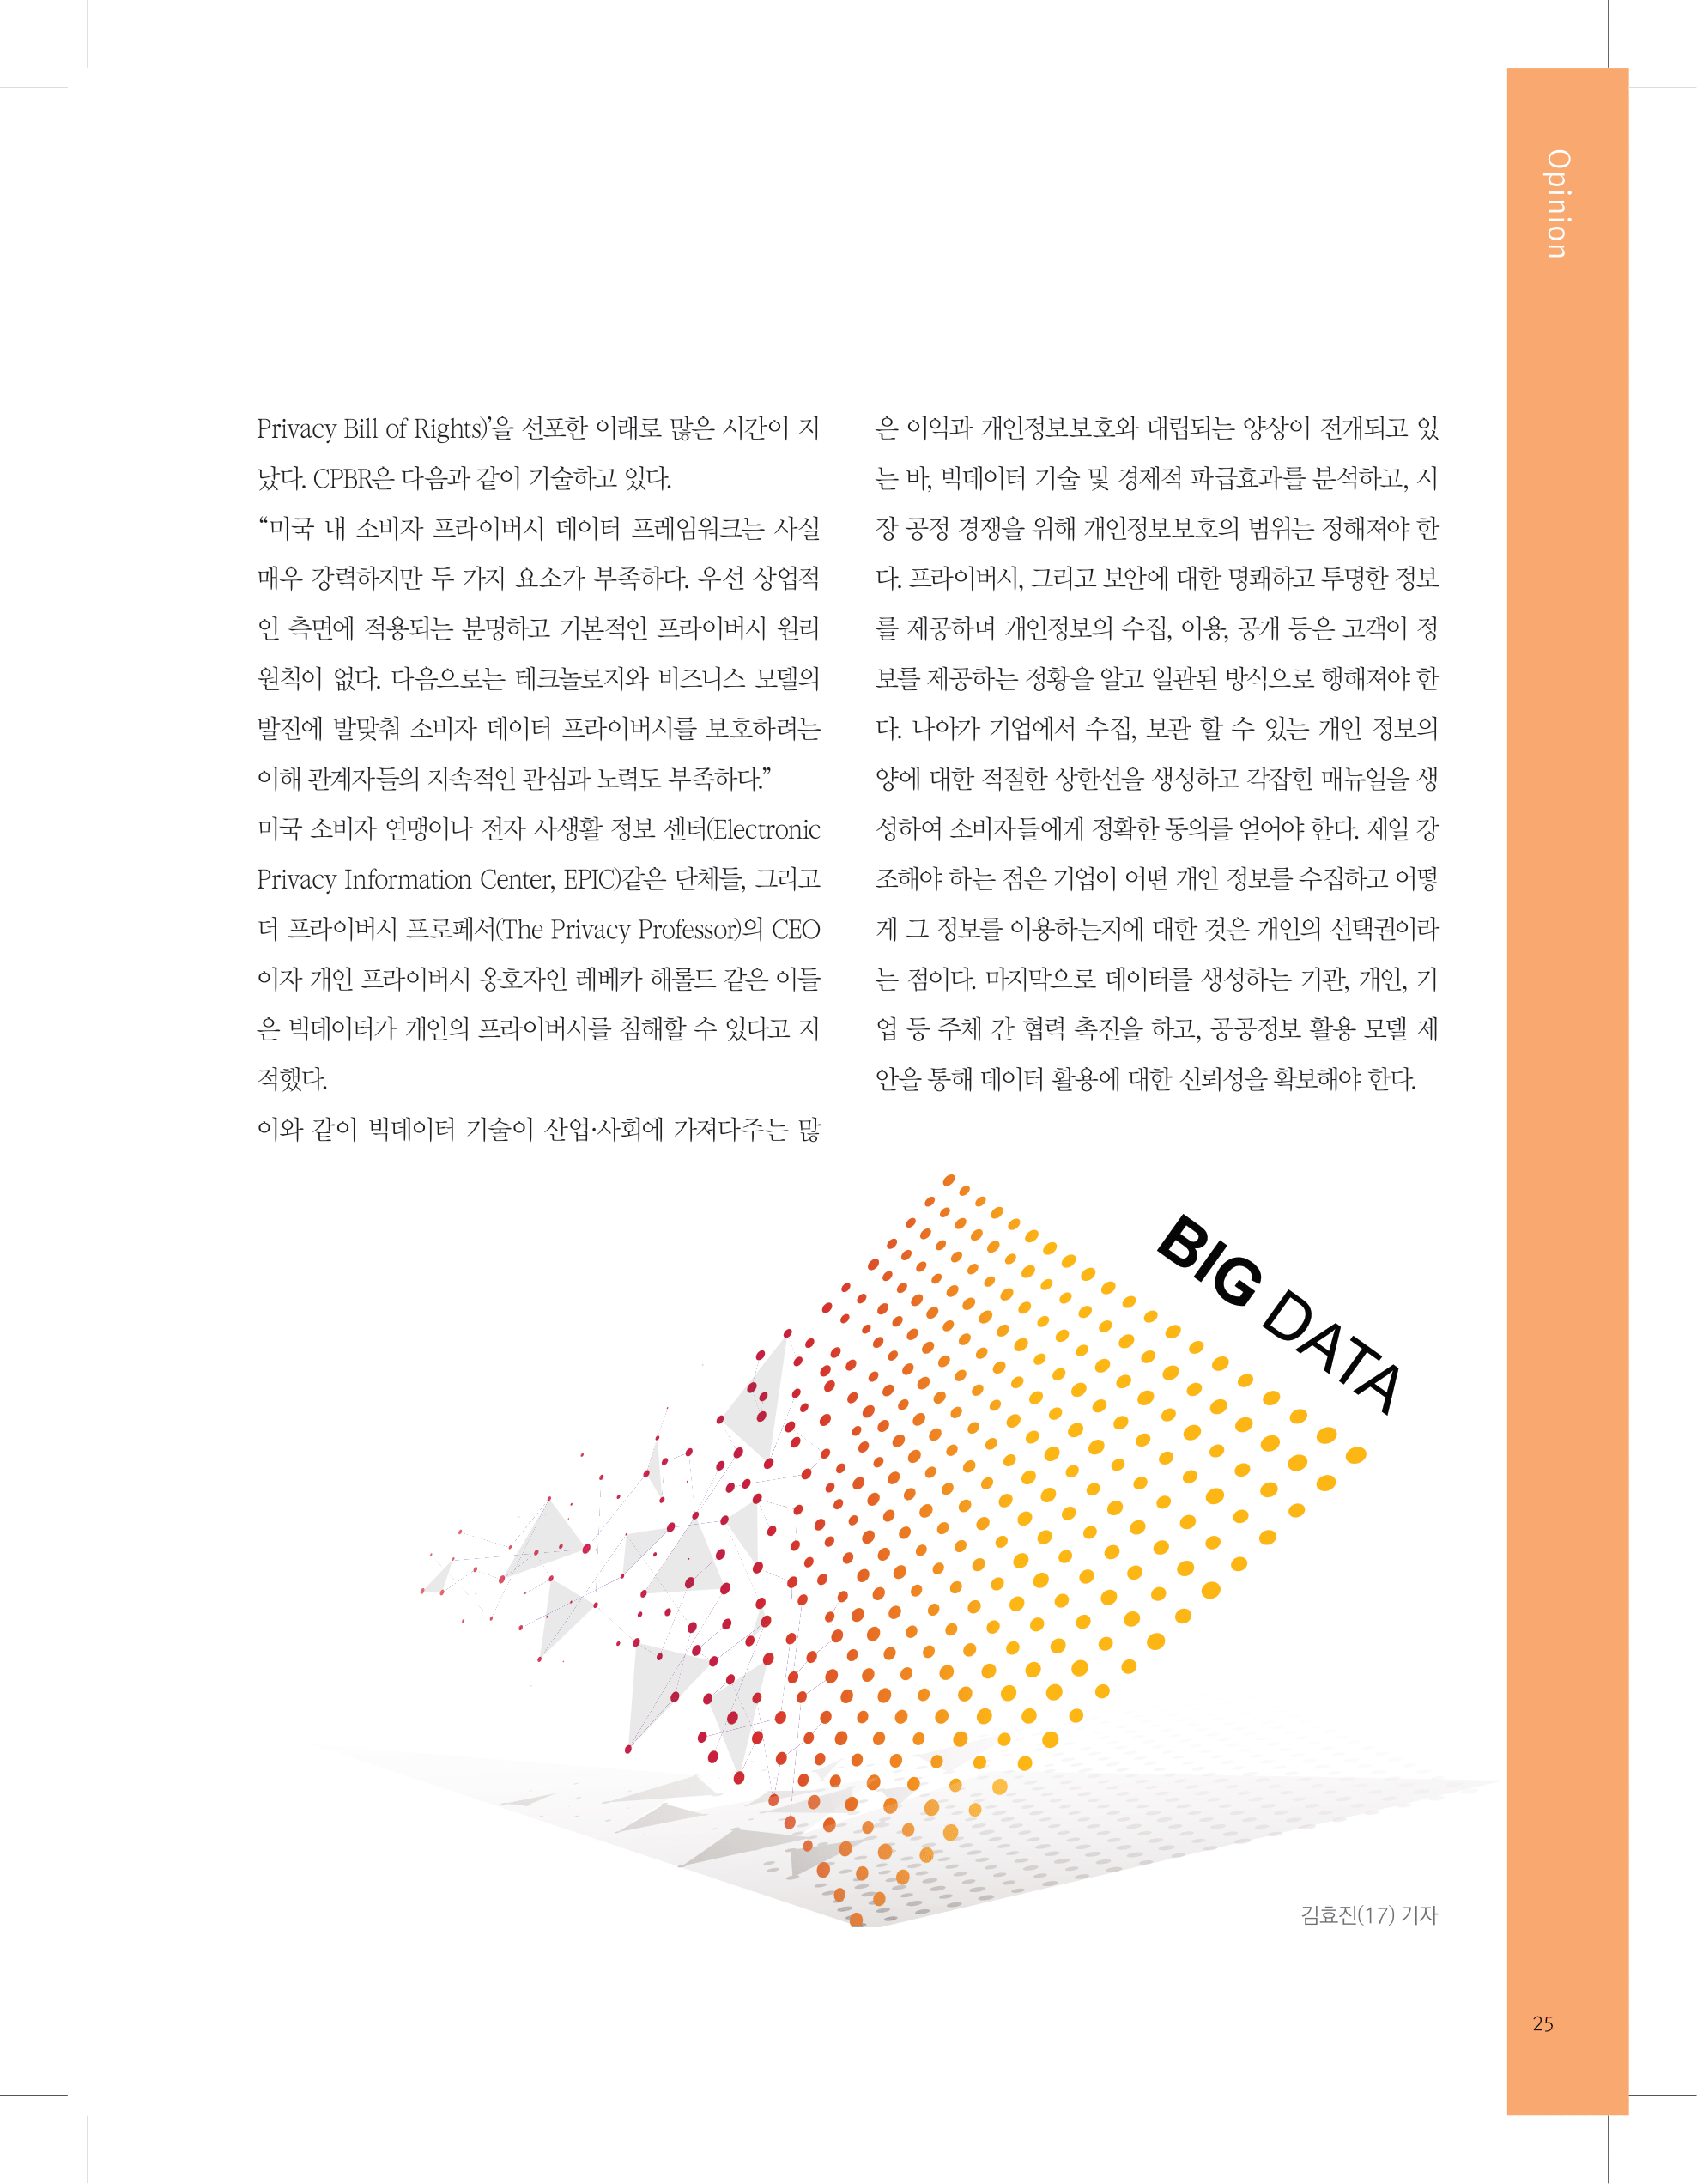 뜻새김 신문 74호 25